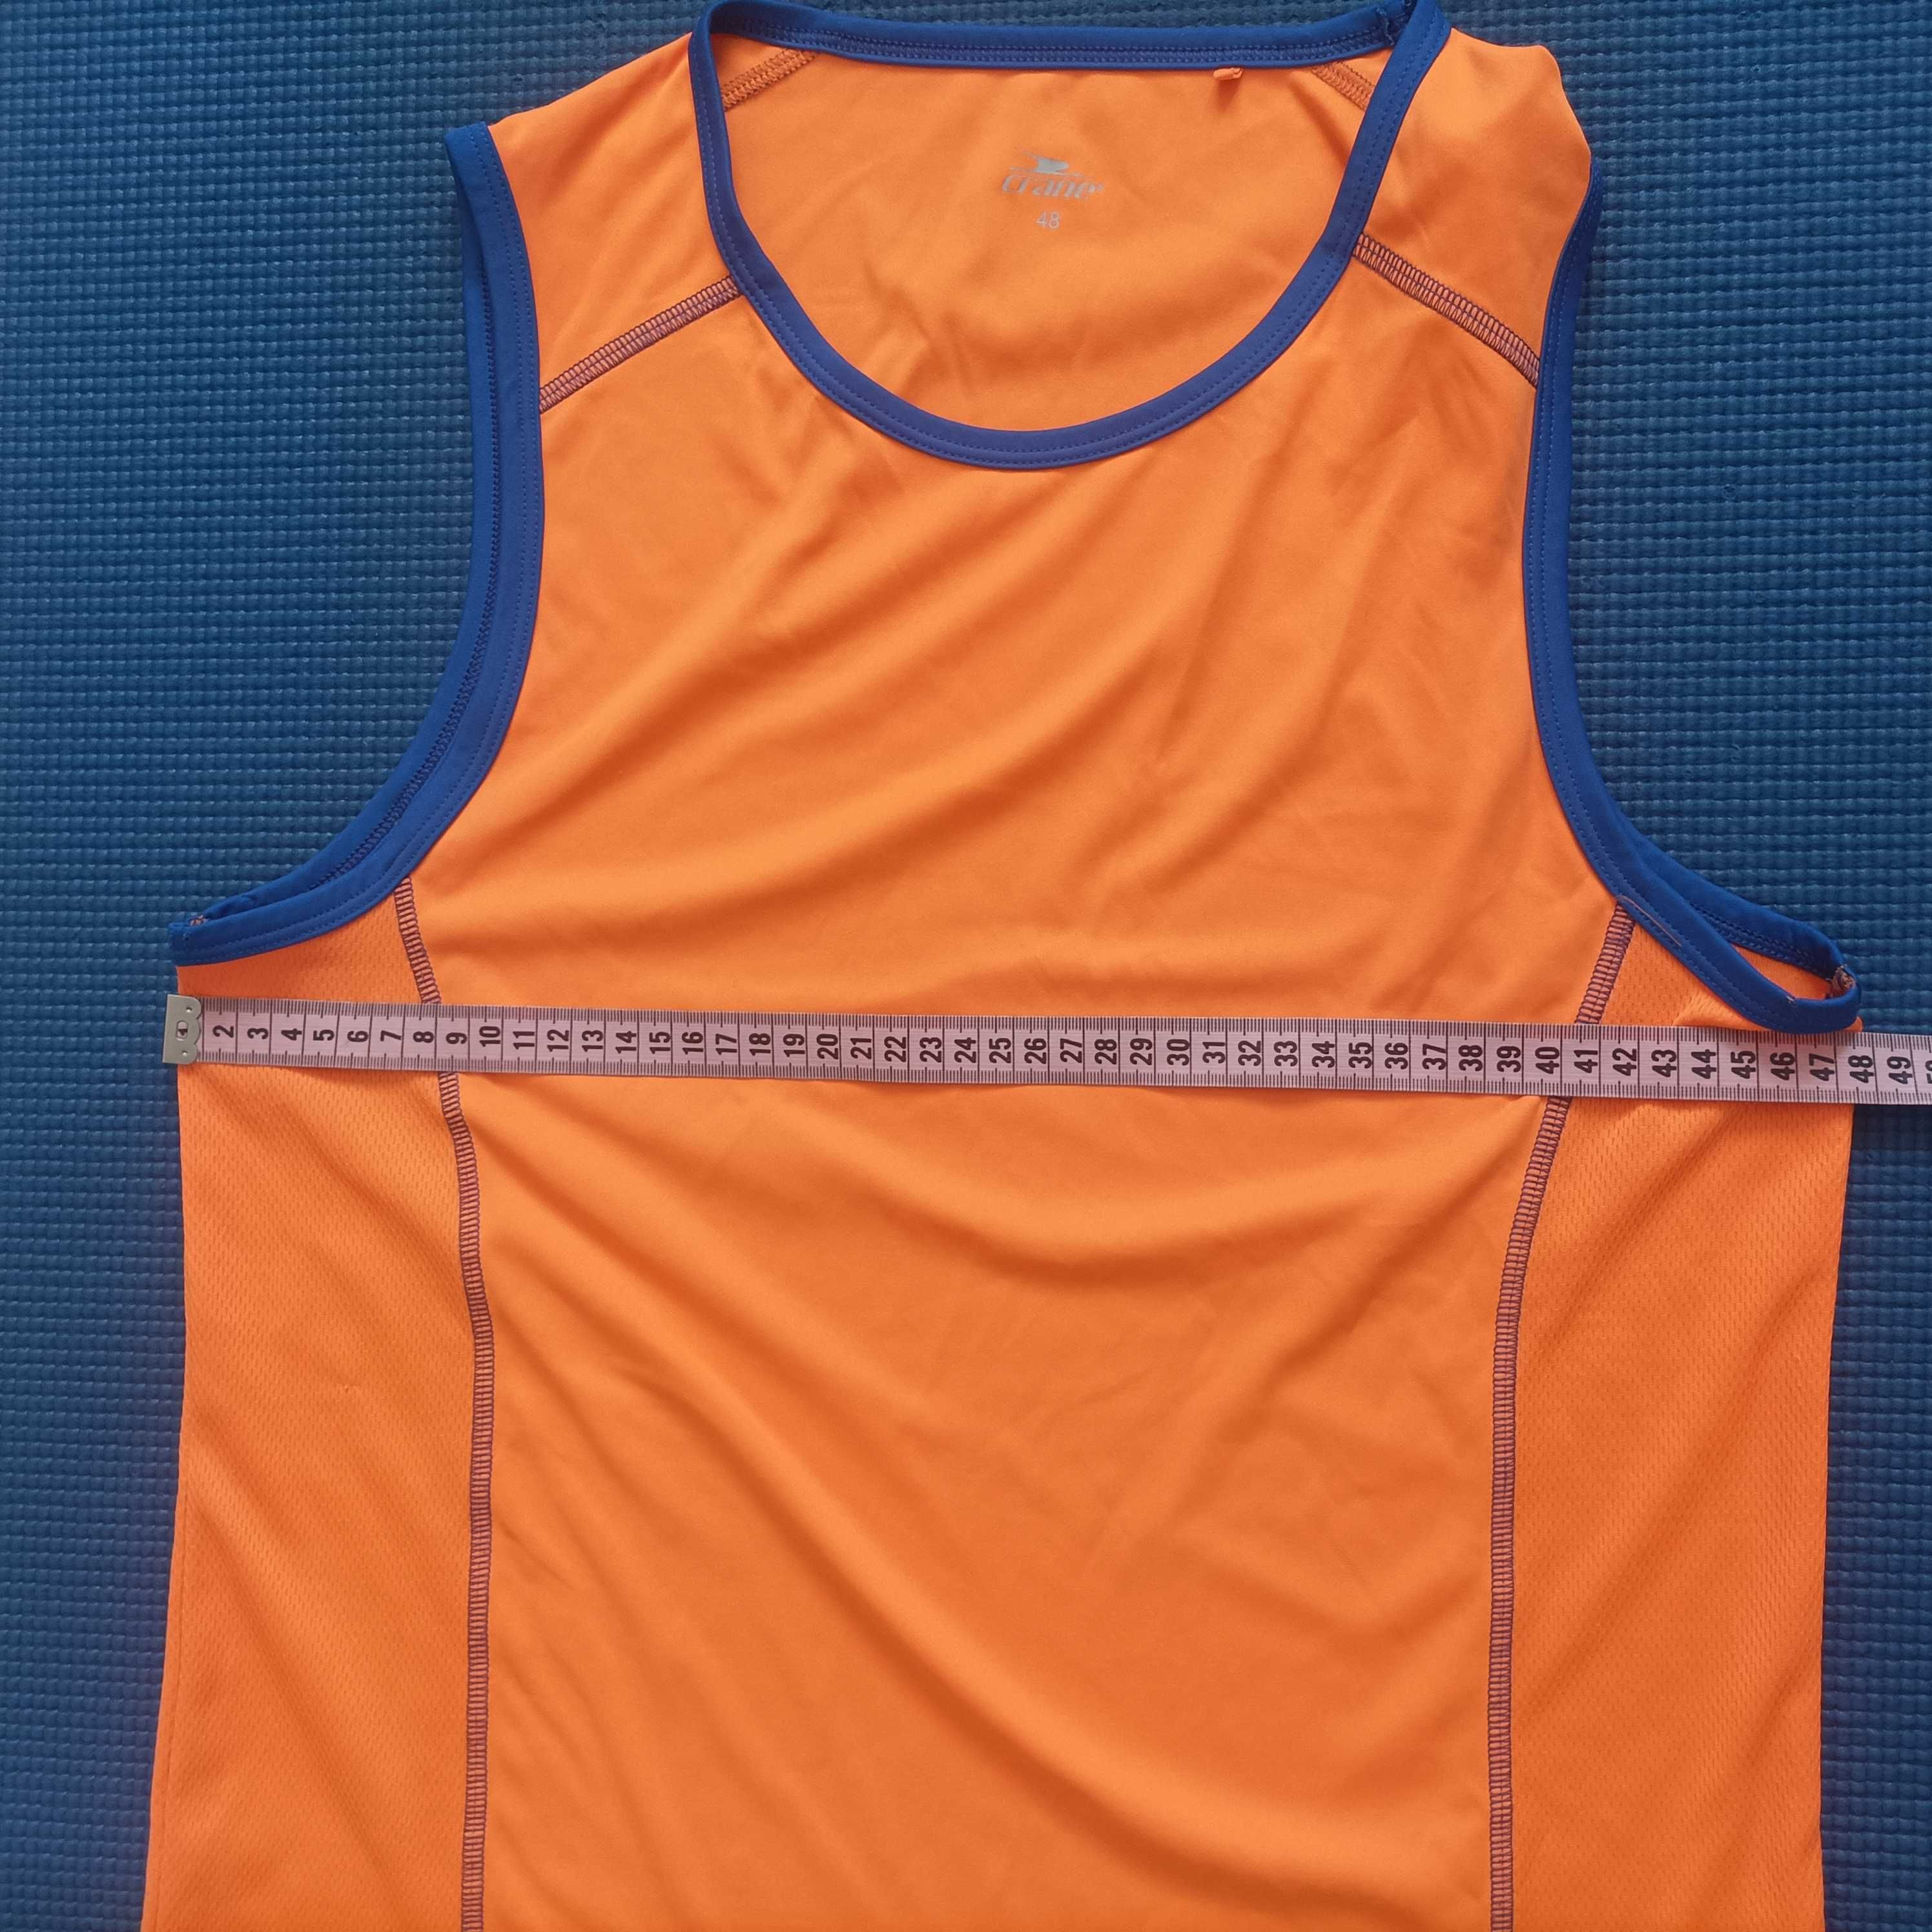 Koszulka furlane sportowa pomarańczowa - R-48